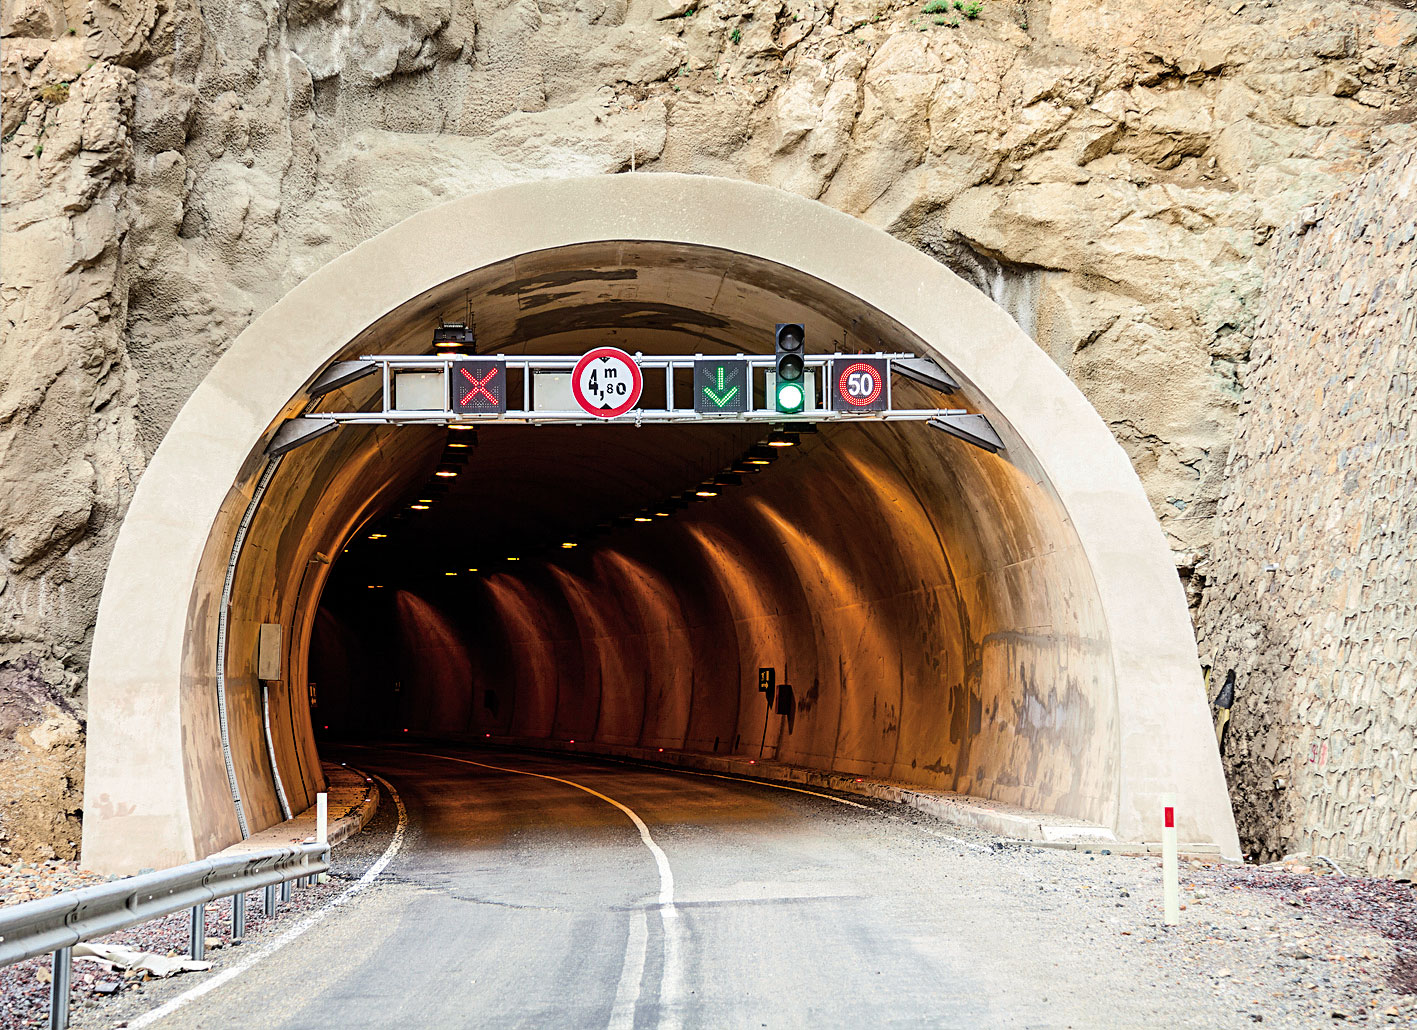 Rádiové spojenie dovoľuje plnohodnotne využívať komunikačné prostriedky potrebné na zabezpečenie bezpečnosti prevádzky tunela.